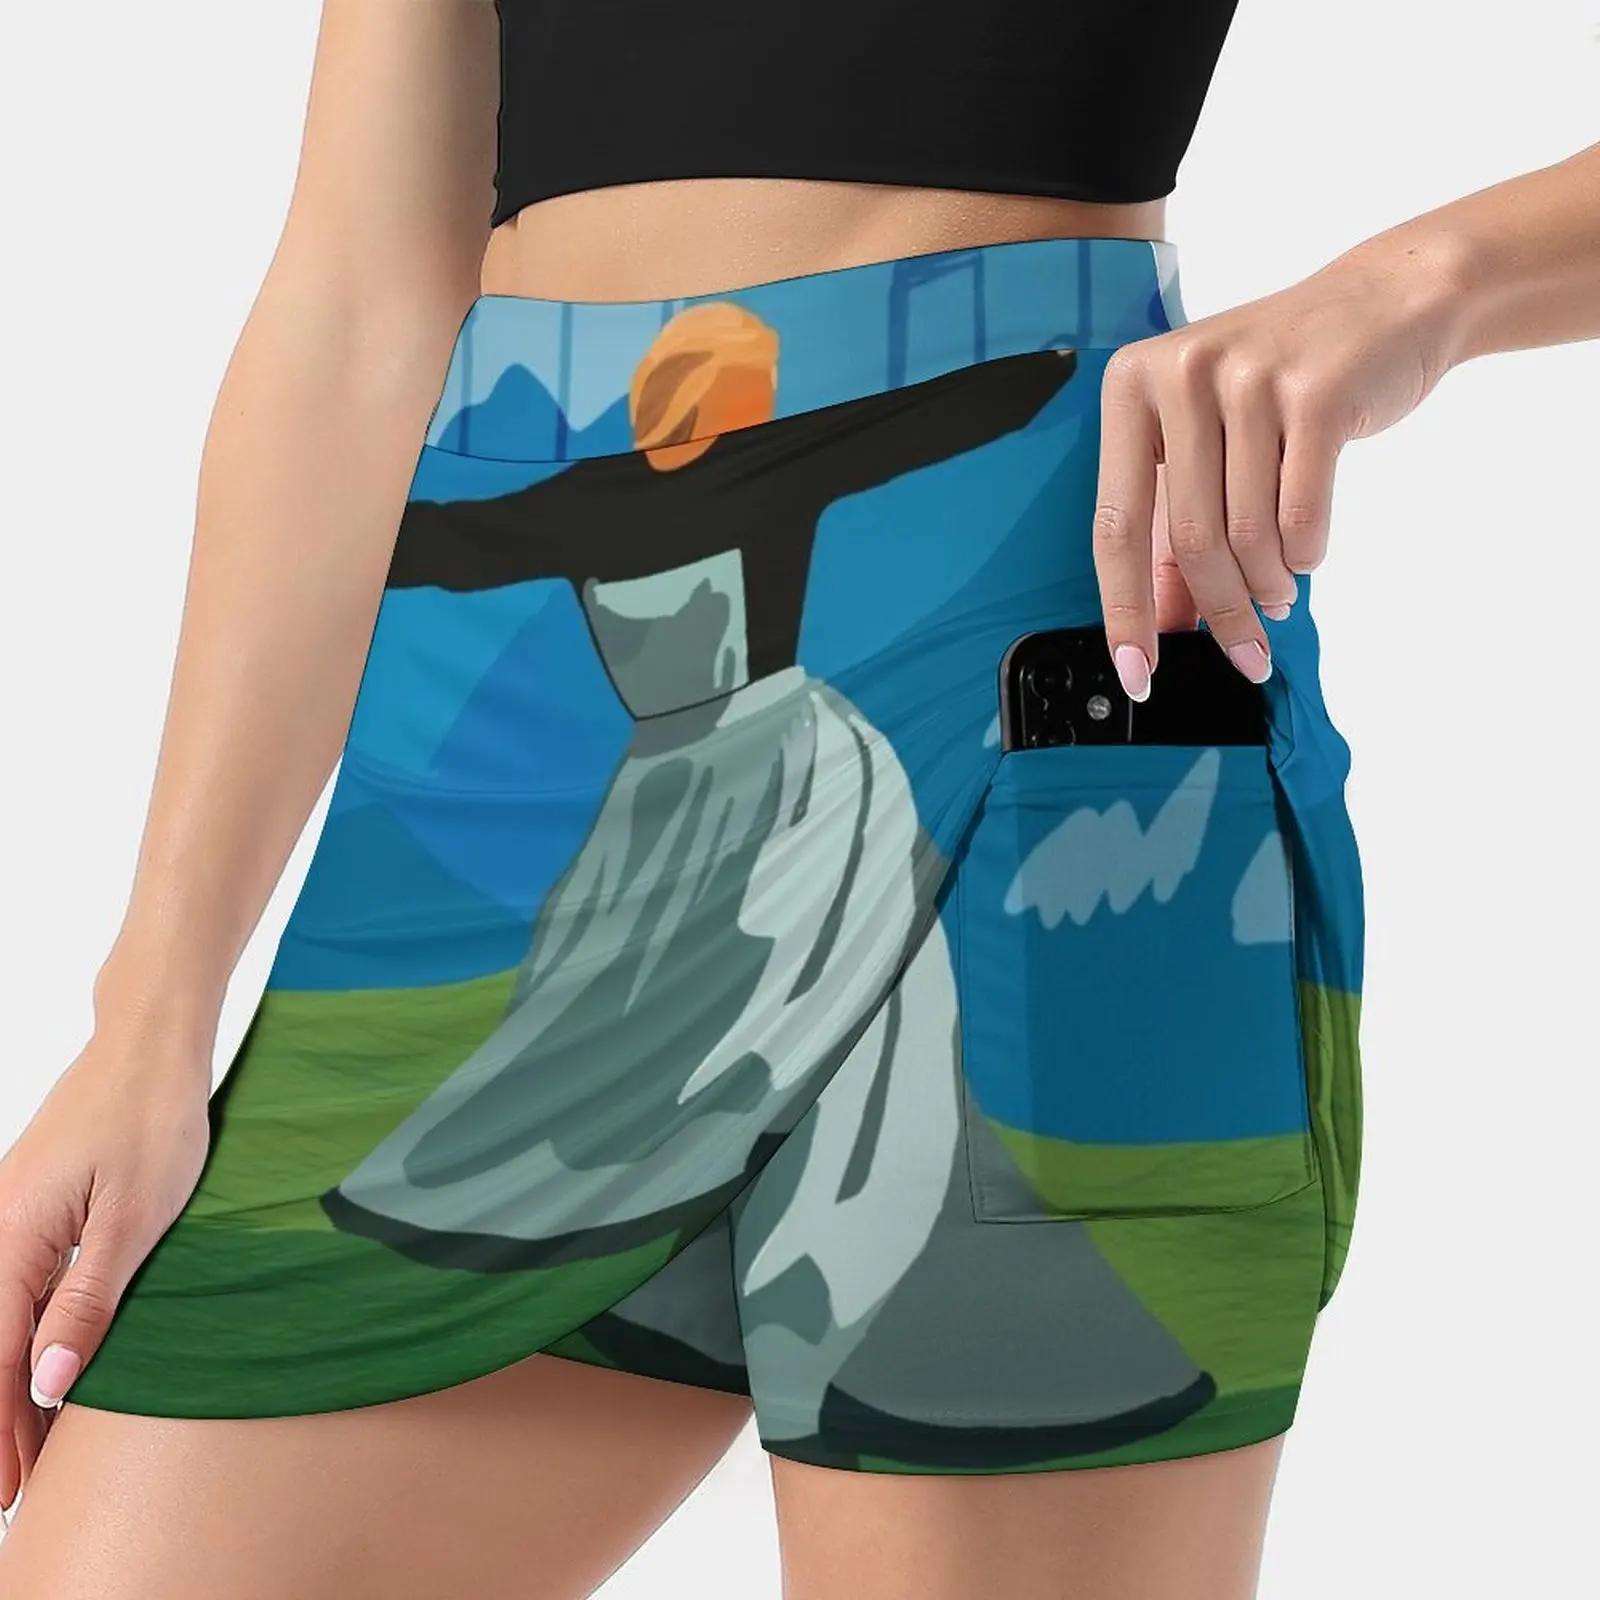 

Женская юбка со звуком музыки, юбка для тенниса со скрытым карманом, юбки для гольфа, юбки для бадминтона, юбки для бега с музыкой